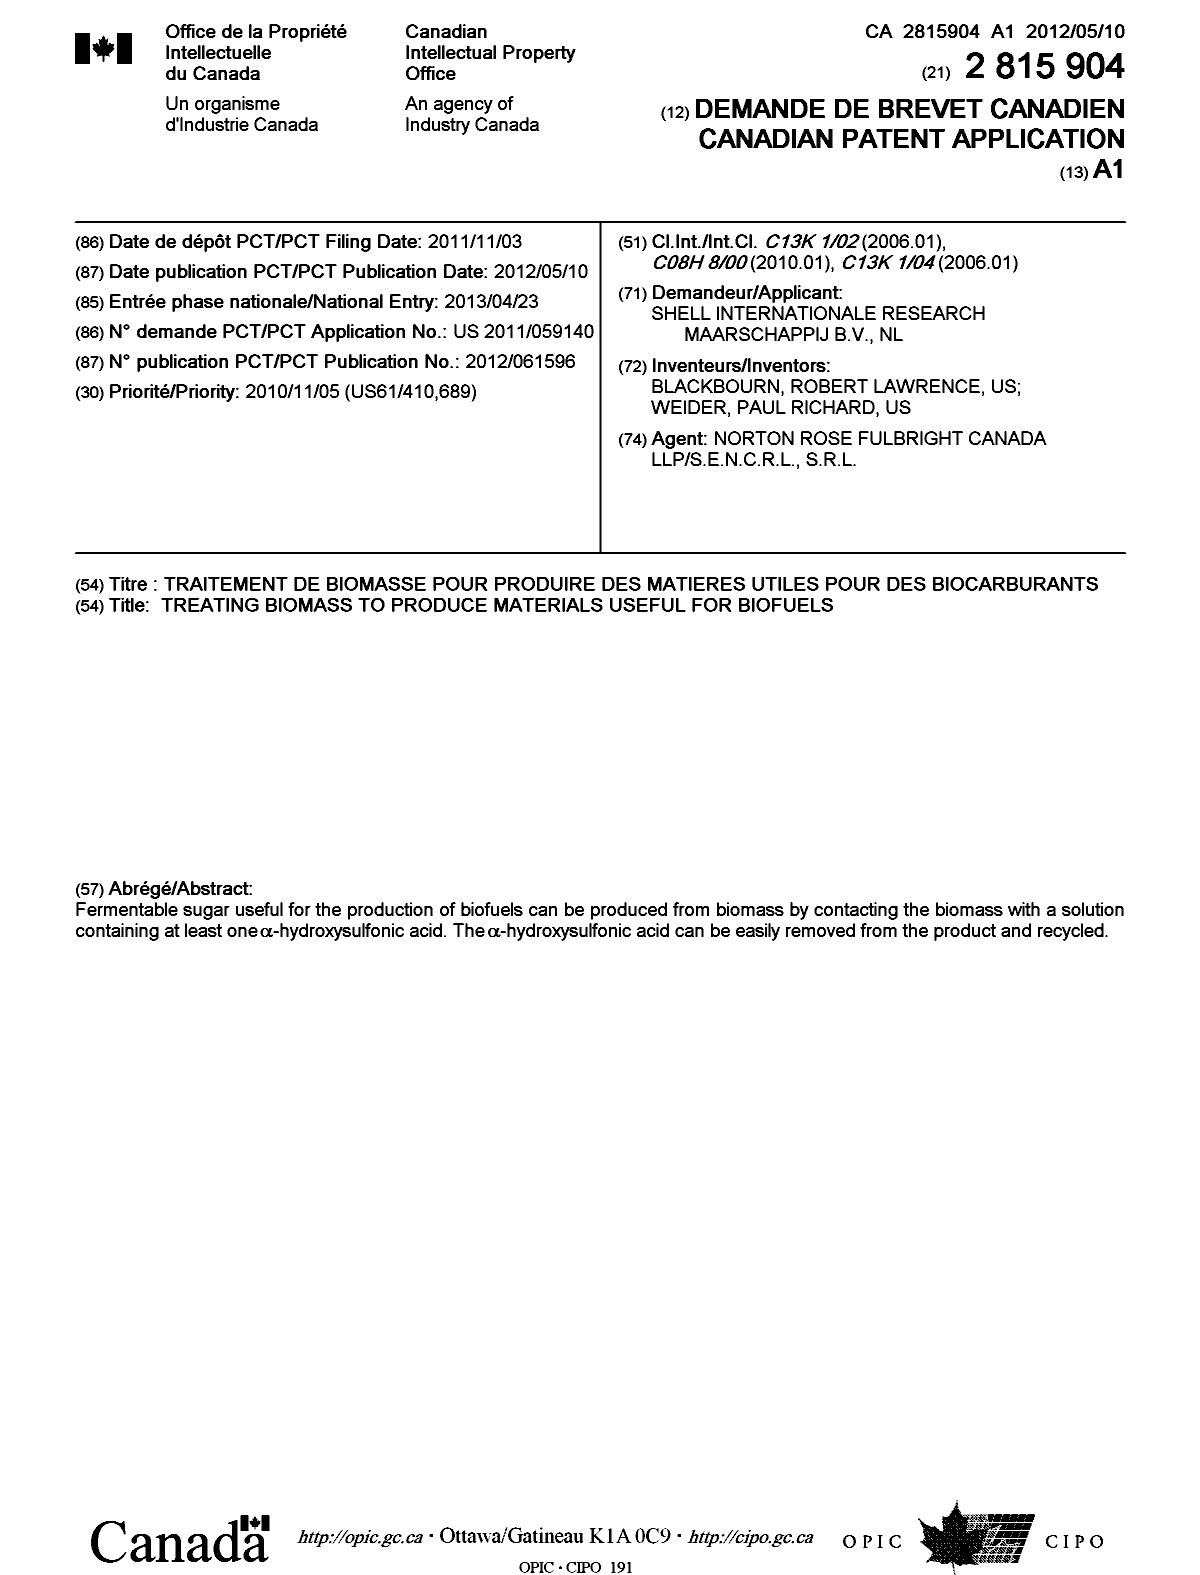 Document de brevet canadien 2815904. Page couverture 20121211. Image 1 de 1